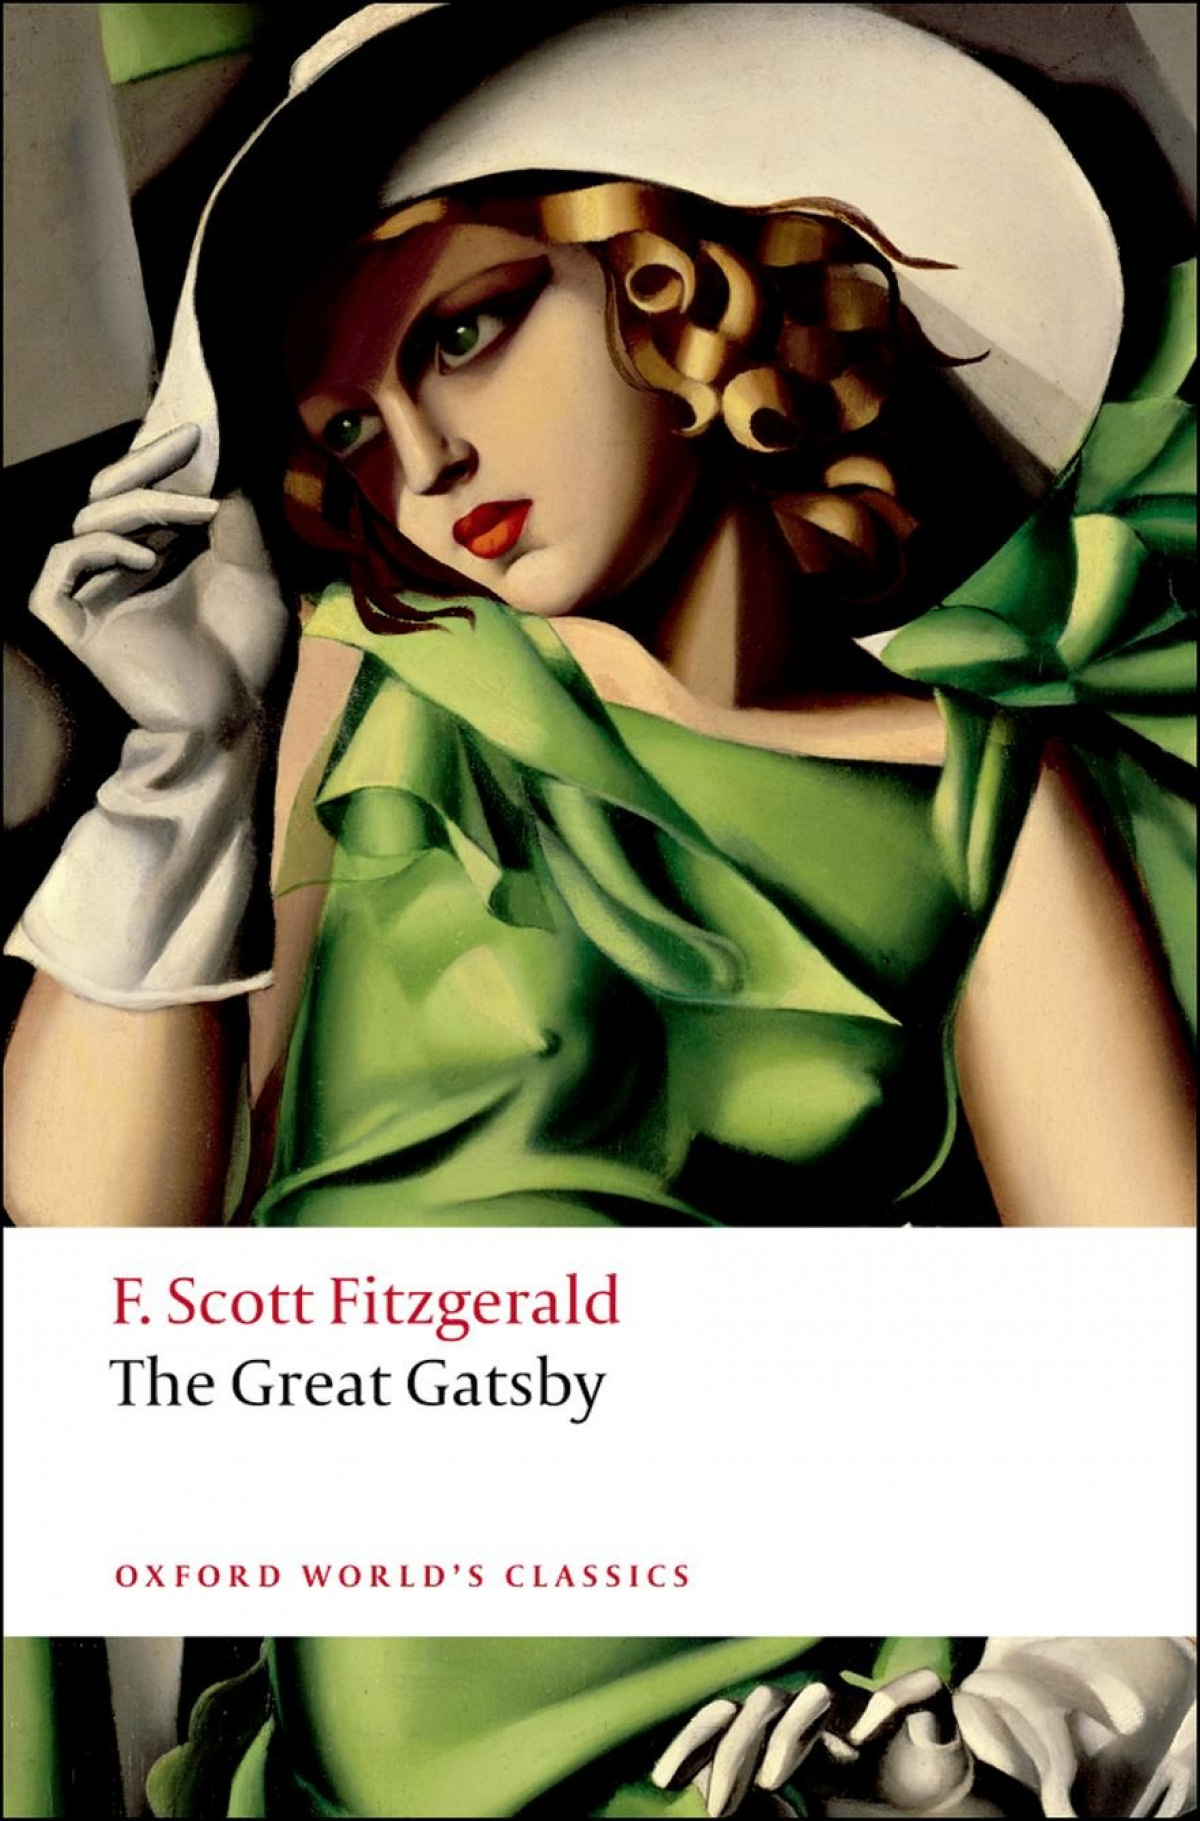 Oxford Worlds Classics: The Great Gatsby - Fitzgerald, F. Scott